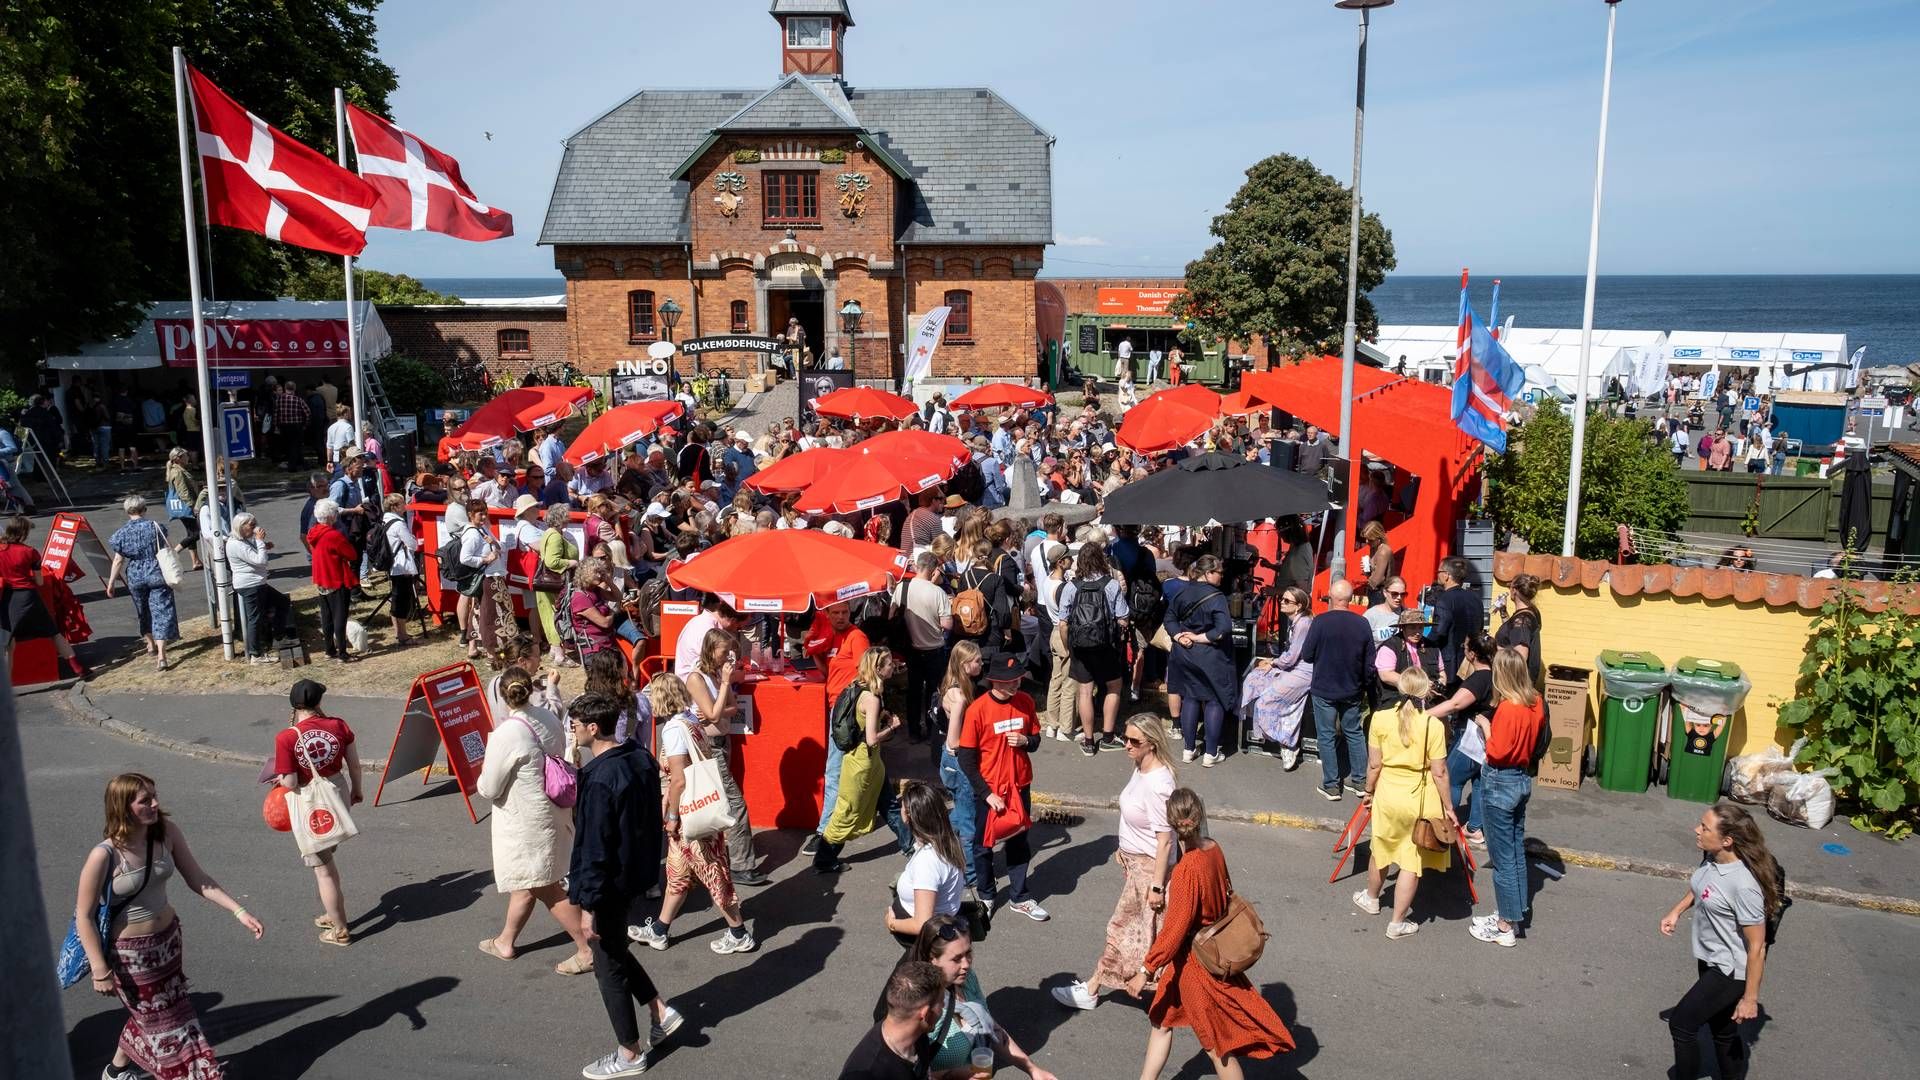 Folkemødet er tilbage og stadig vigtigt for danske virksomheders kommunikation. | Foto: Pelle Rink/Folkemødet/PR